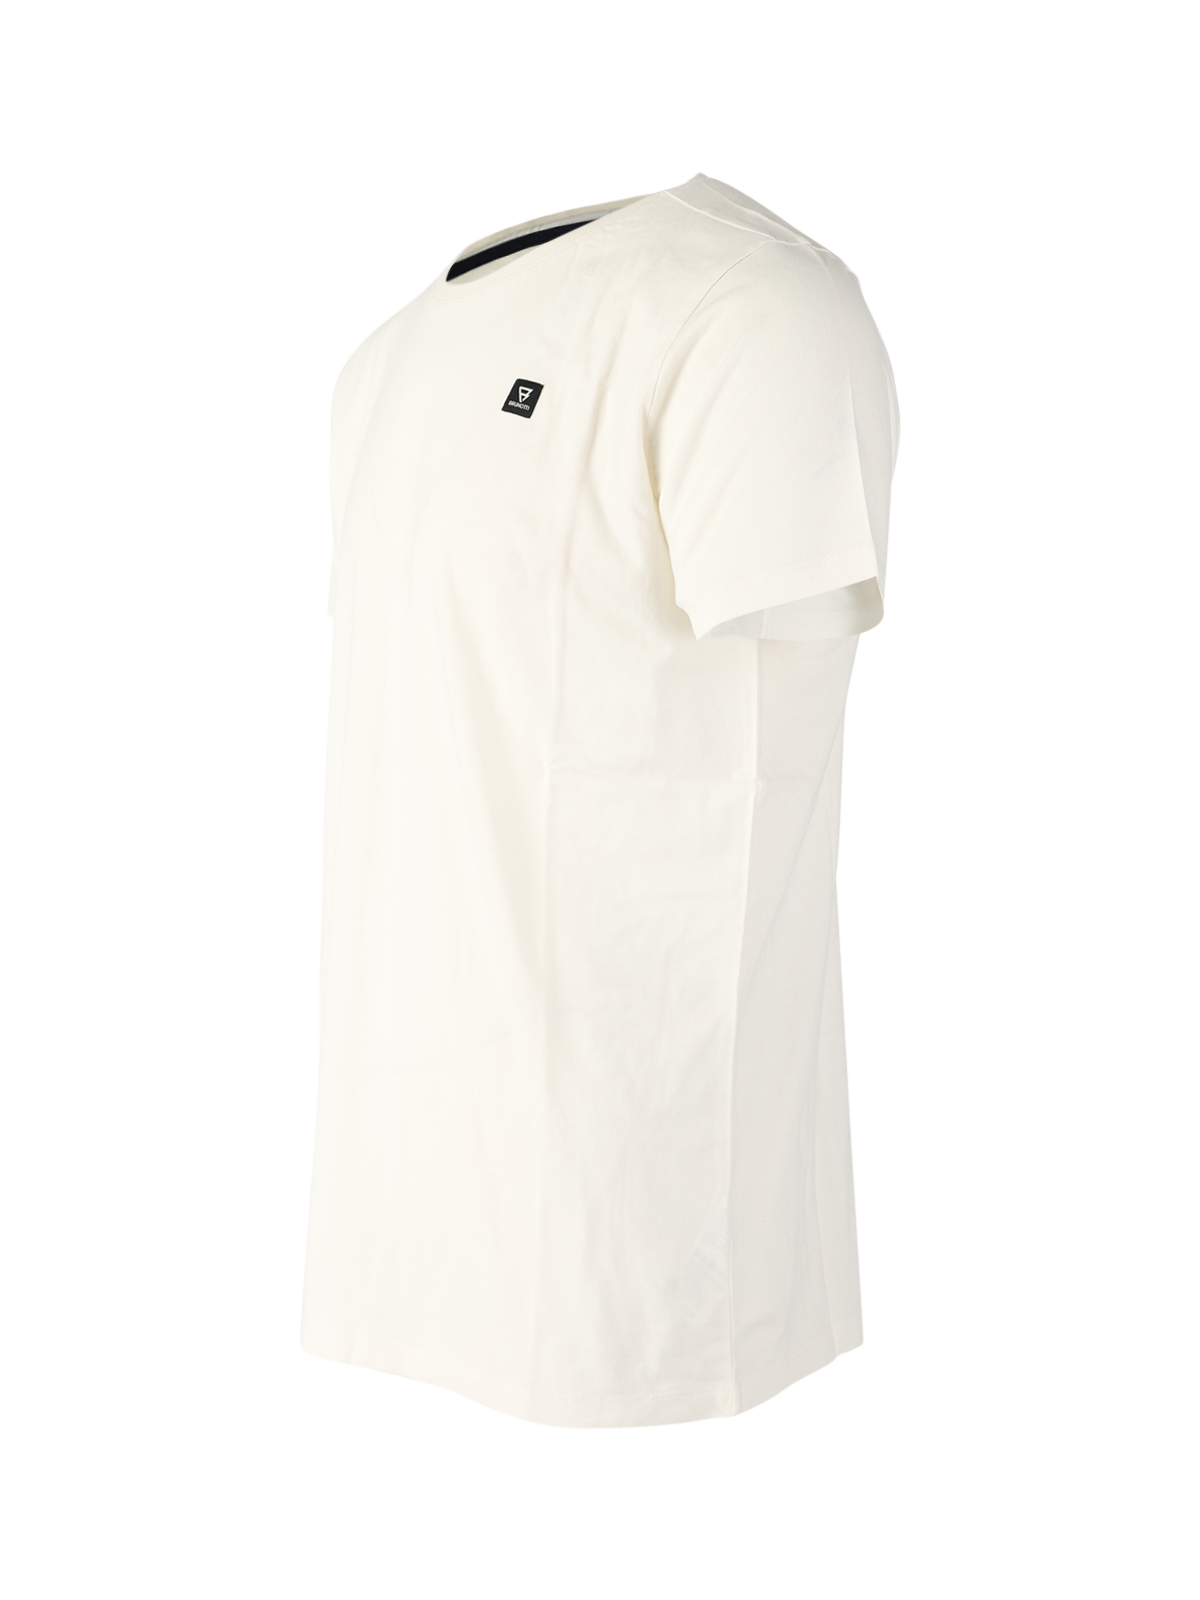 Axlon-R Herren T-Shirt | Weiß